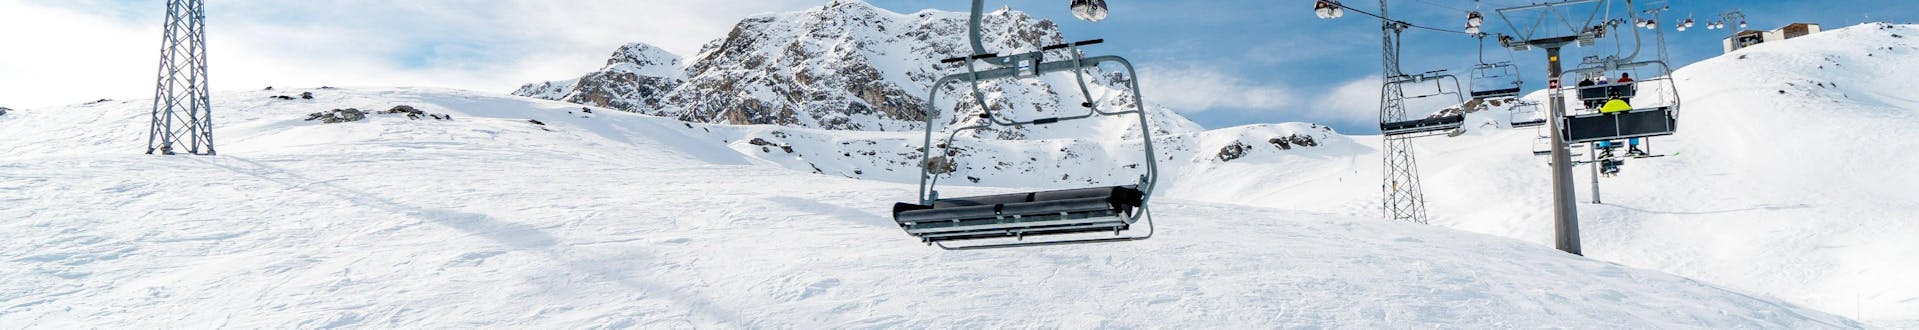 Skilift auf den Pisten von Arosa, lenzerheide in der Schweiz an einem sonnigen Tag.